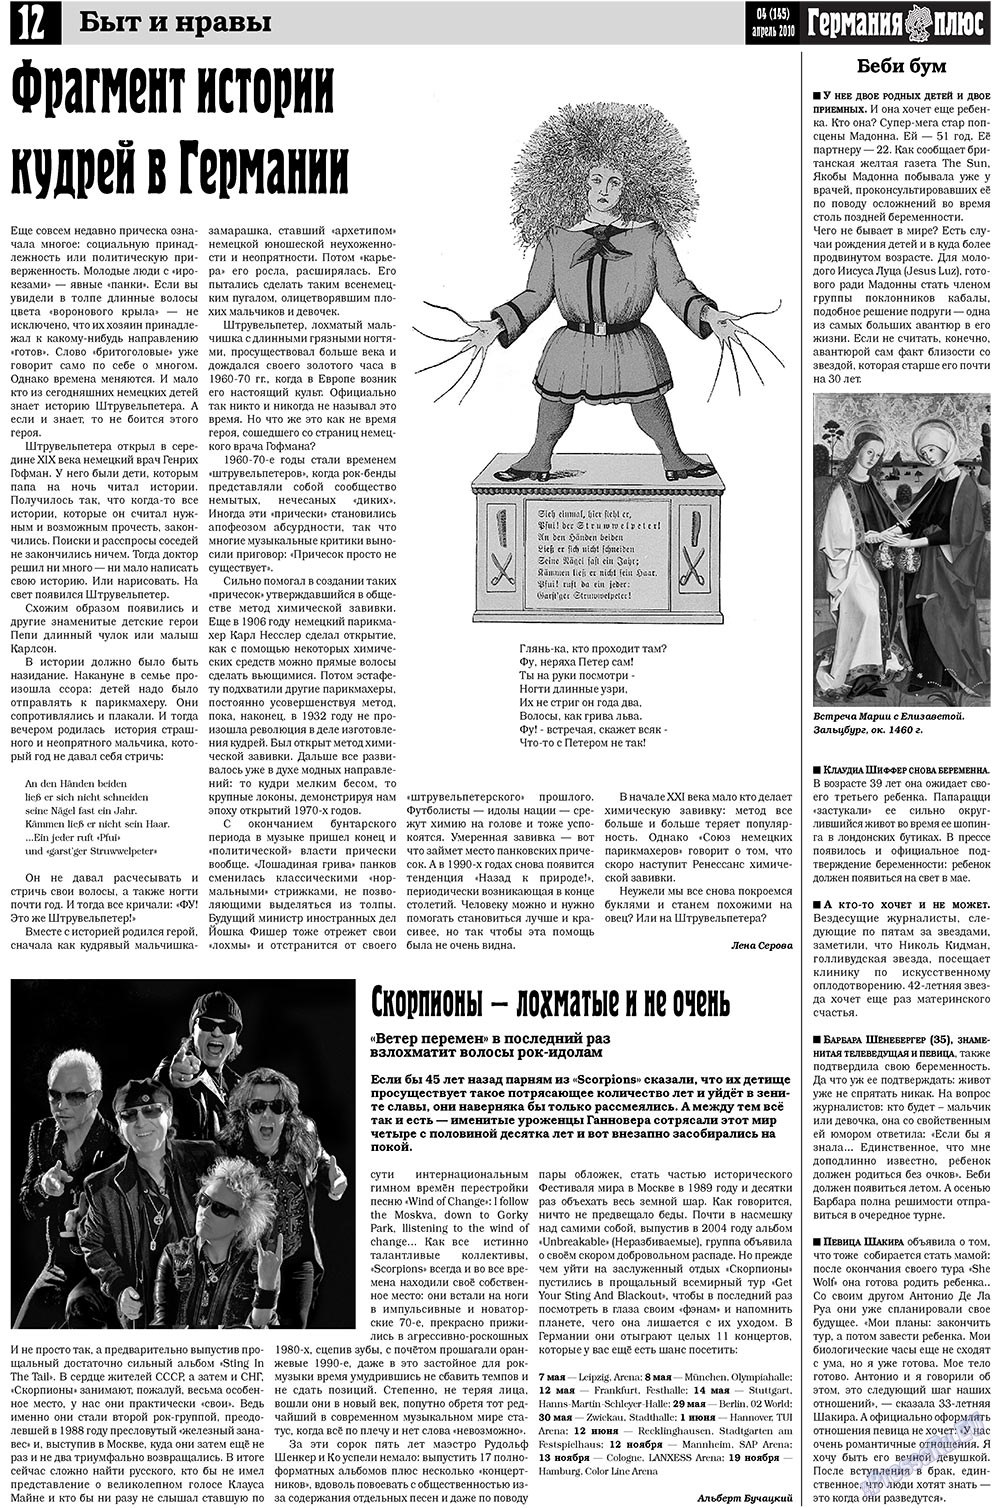 Германия плюс, газета. 2010 №4 стр.12